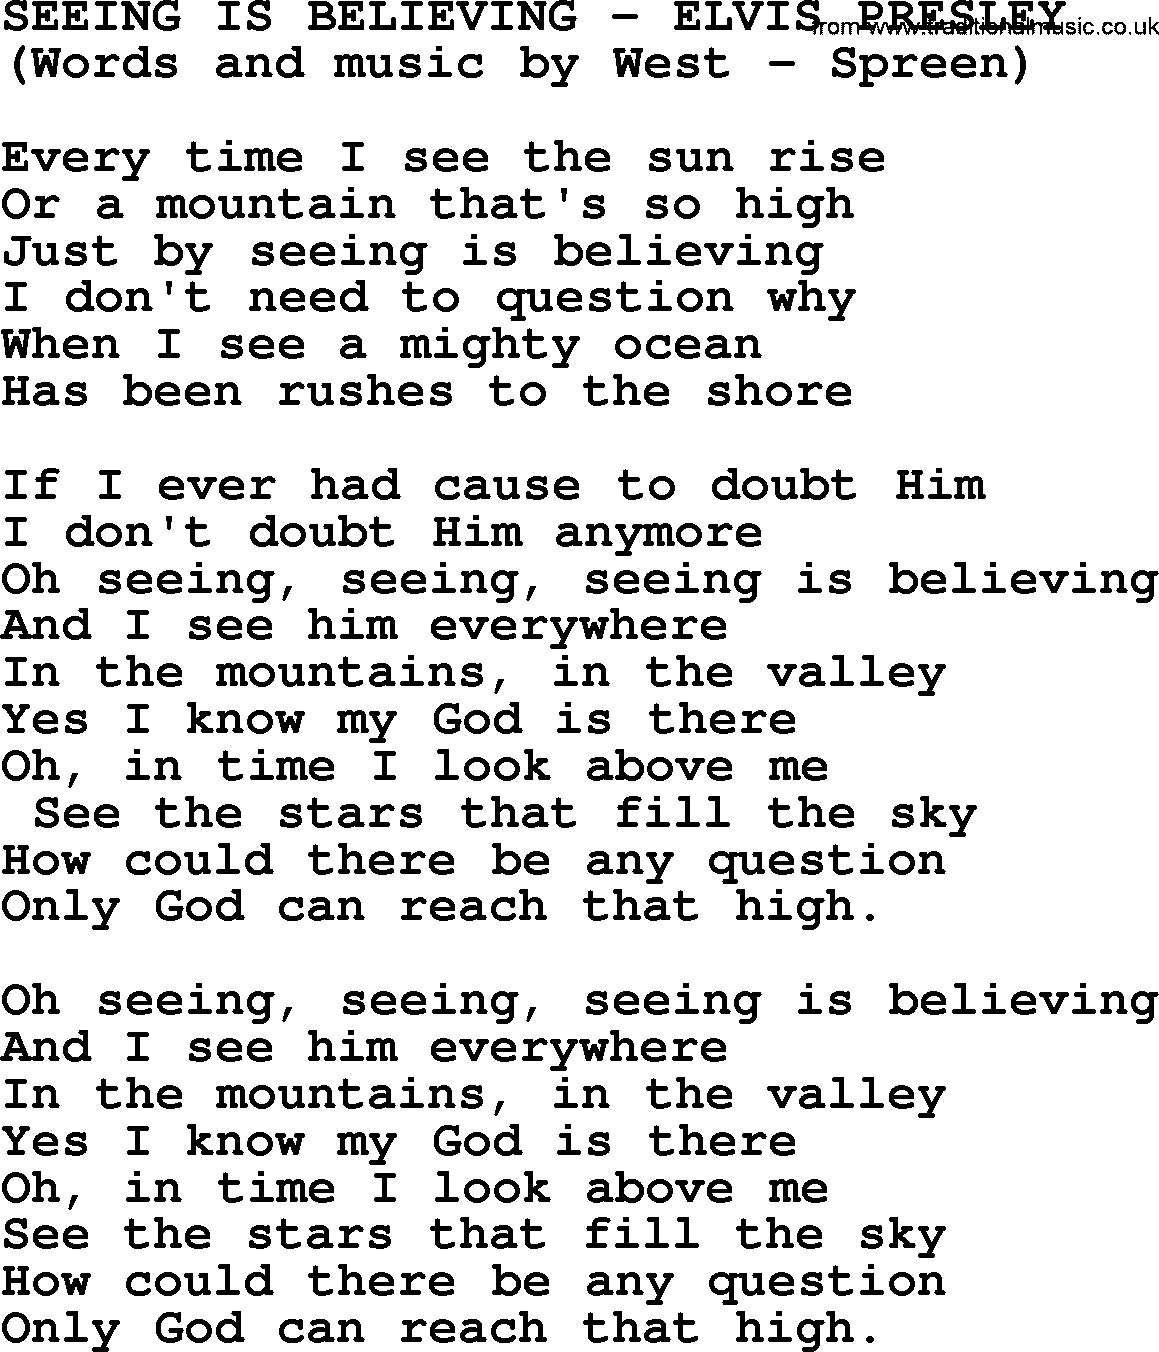 Elvis Presley song: Seeing Is Believing lyrics